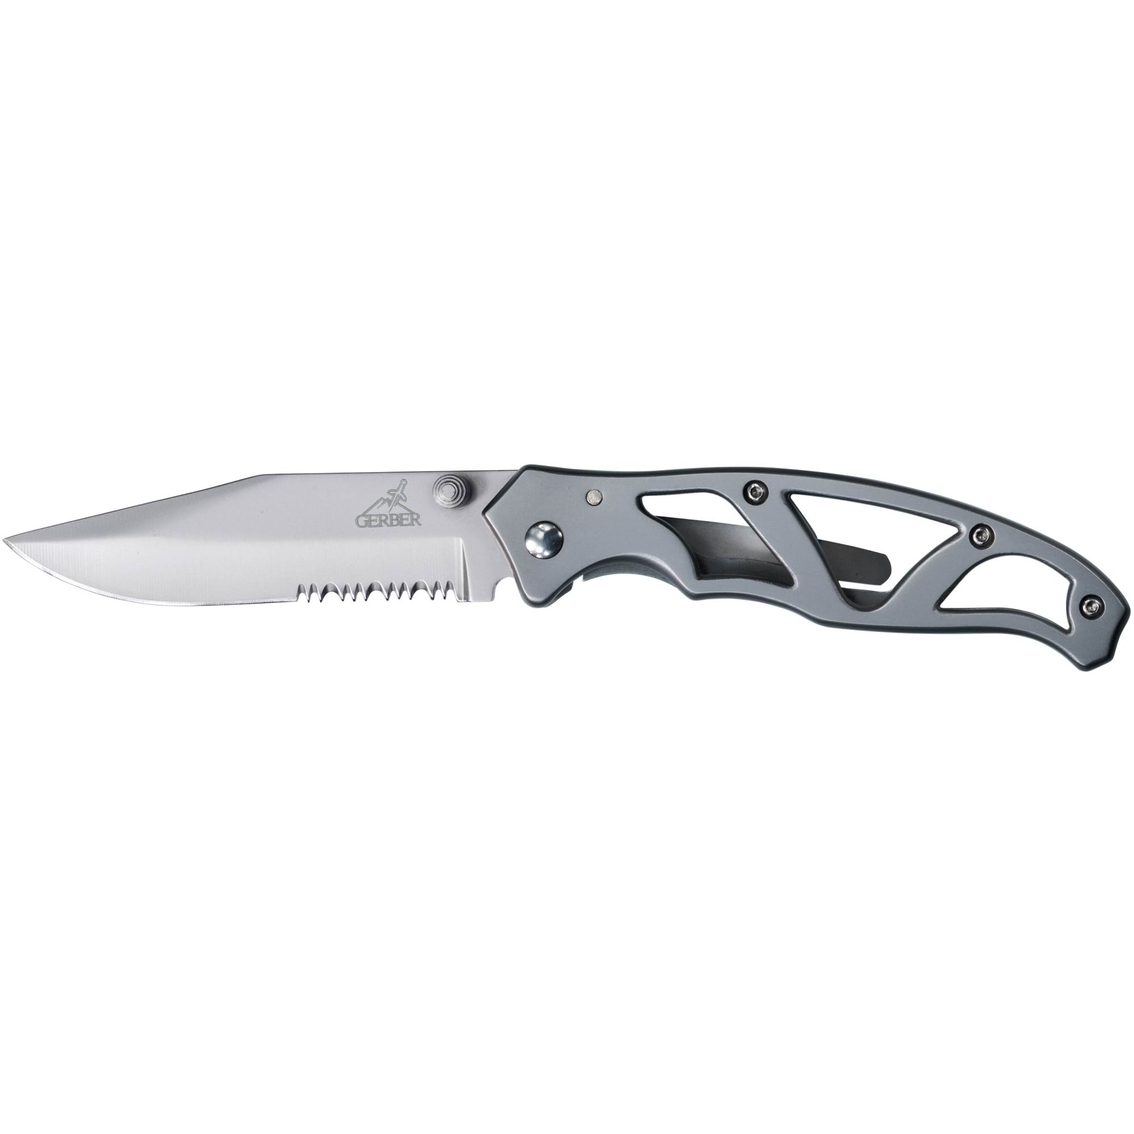 Gerber Stainless Steel Paraframe II Serrated Knife